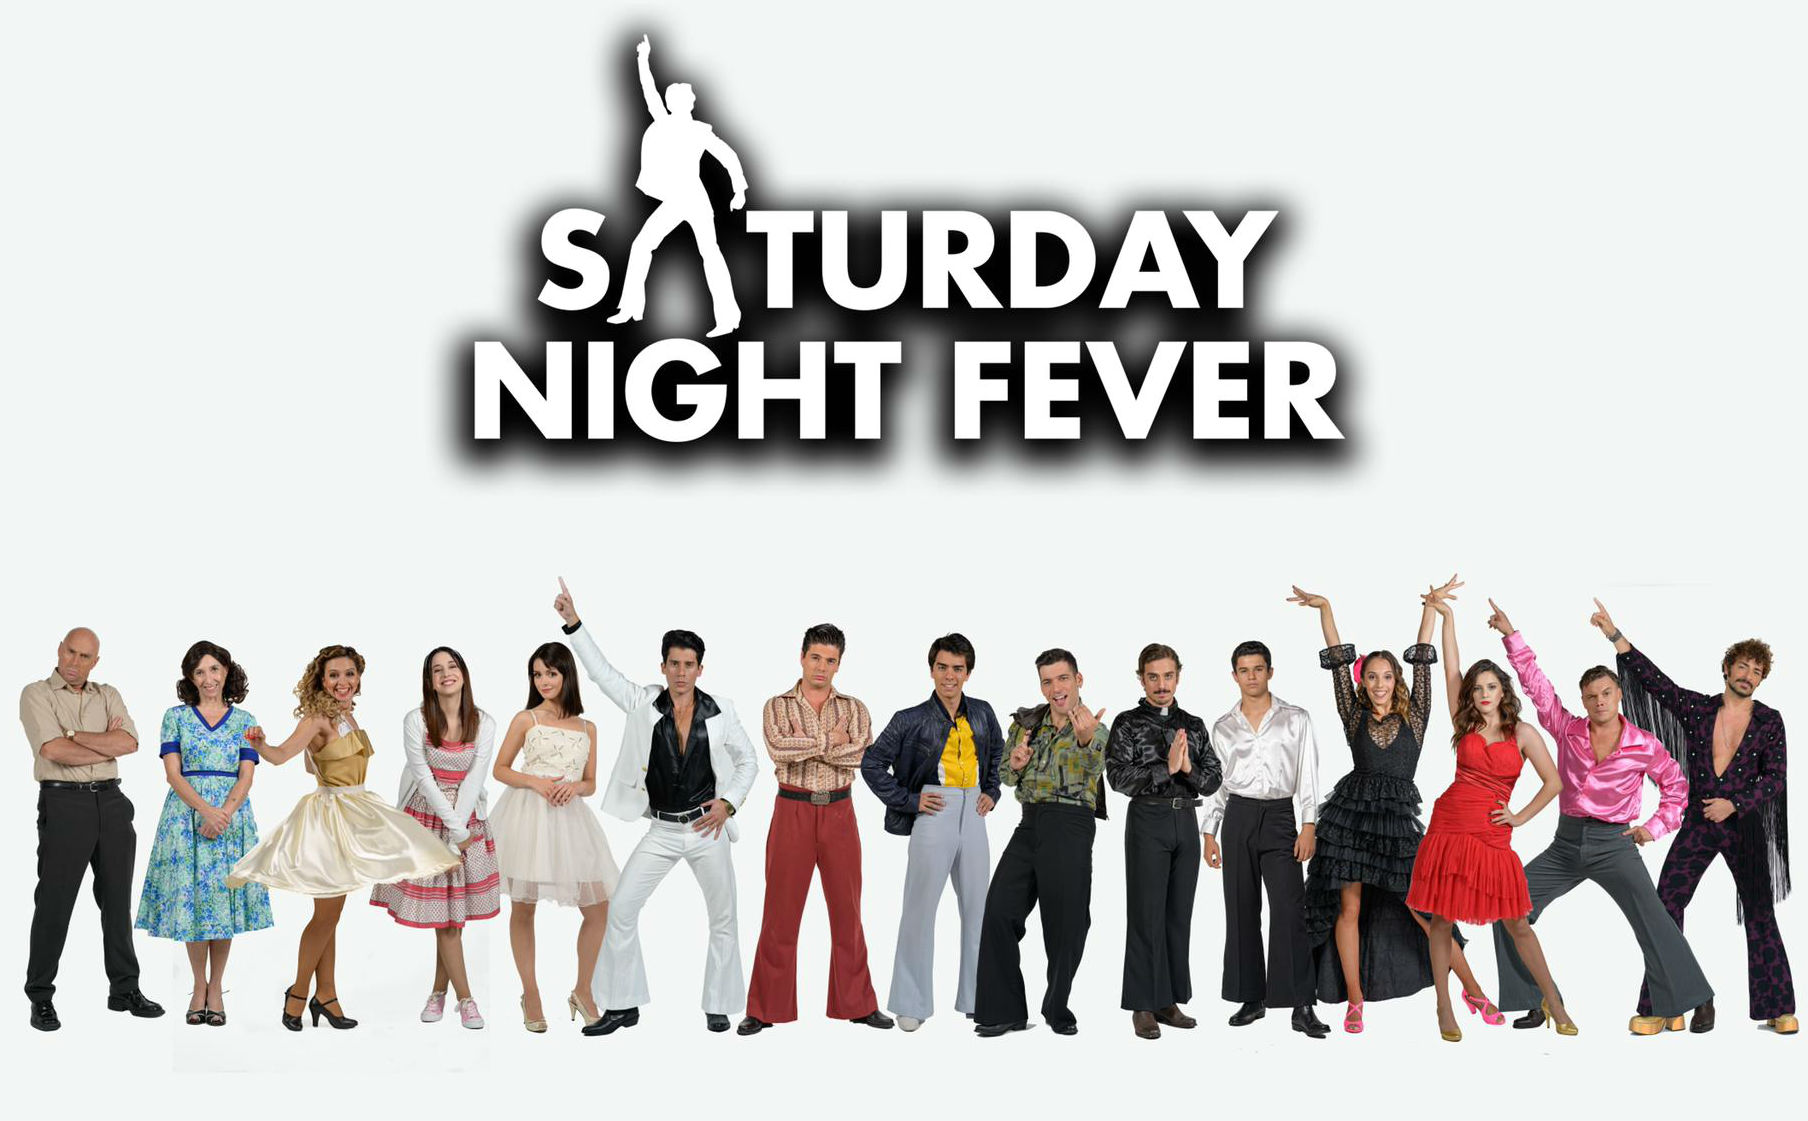 “Saturday Night Fever” estreia a 19 de Setembro no Casino Estoril